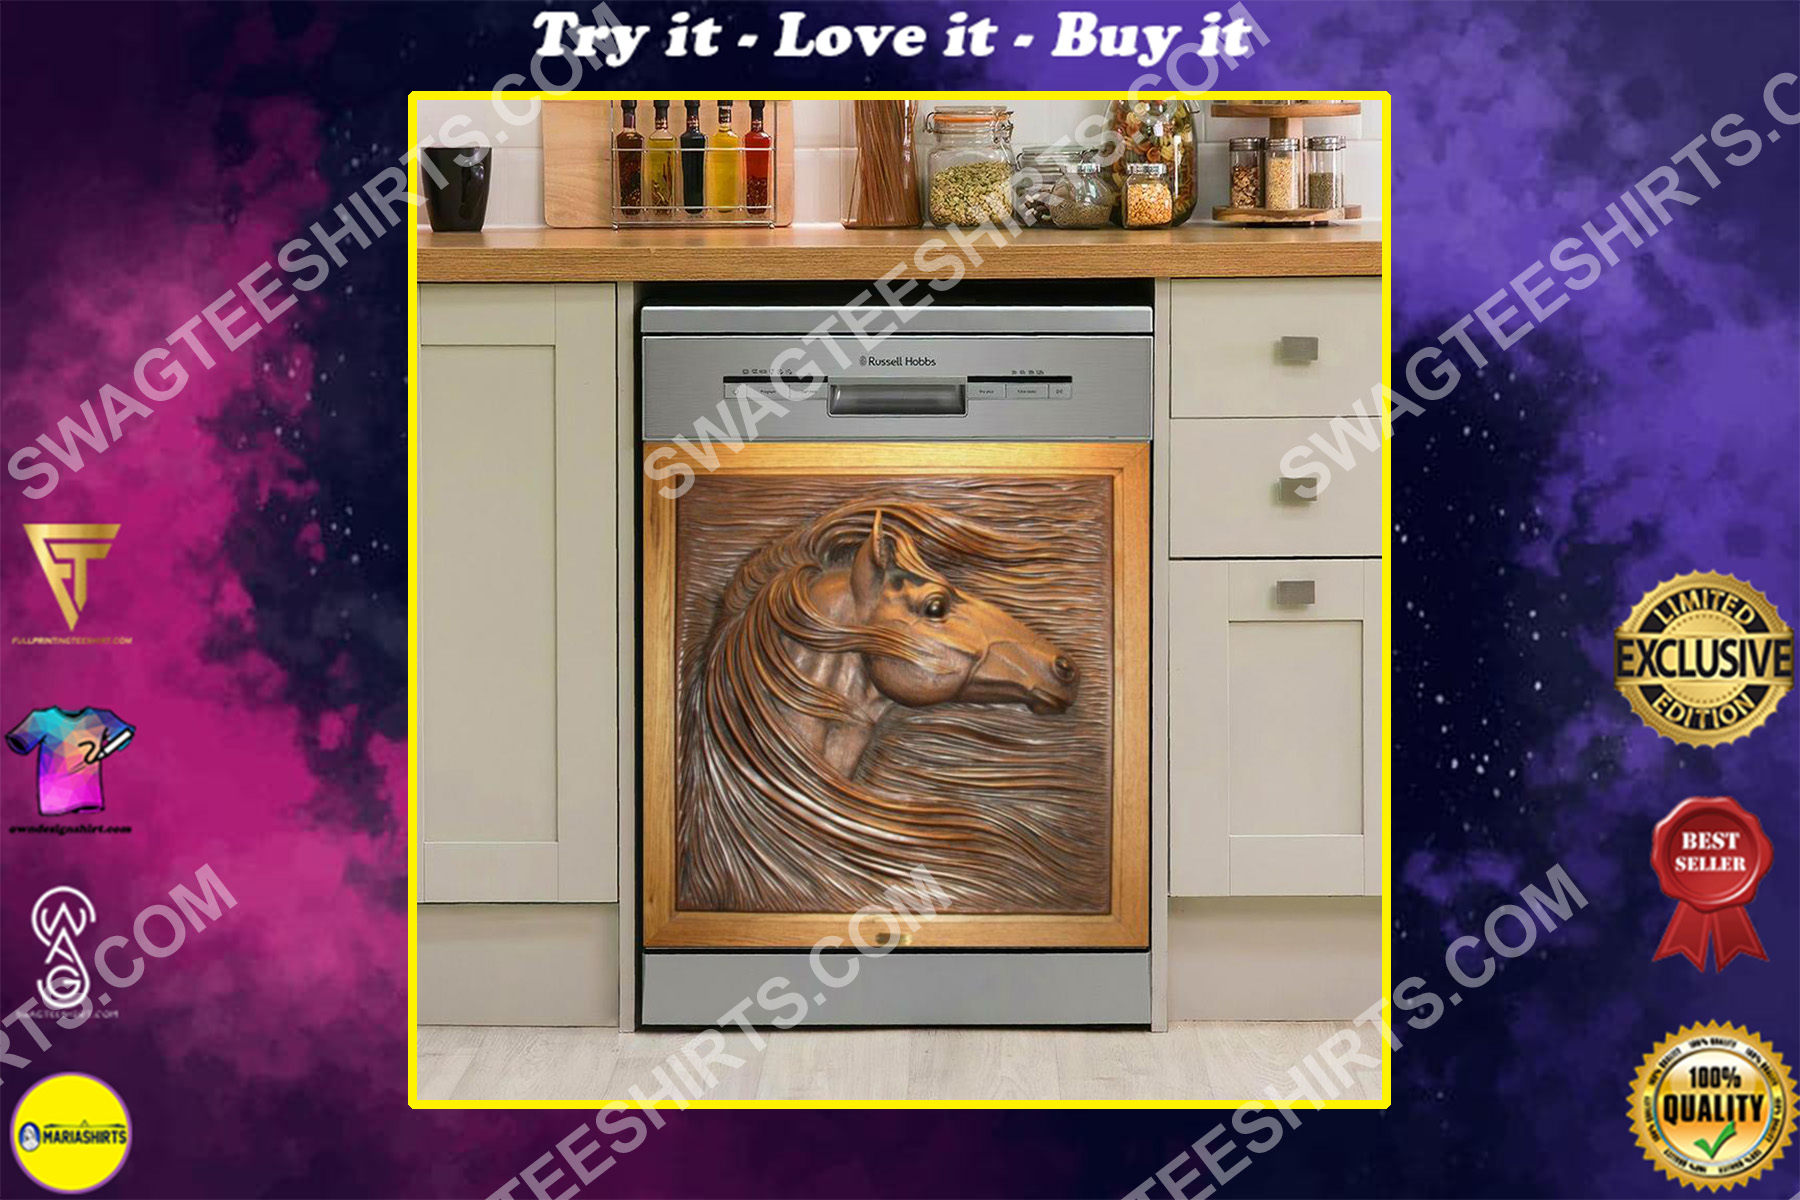 horses vintage kitchen decorative dishwasher magnet cover